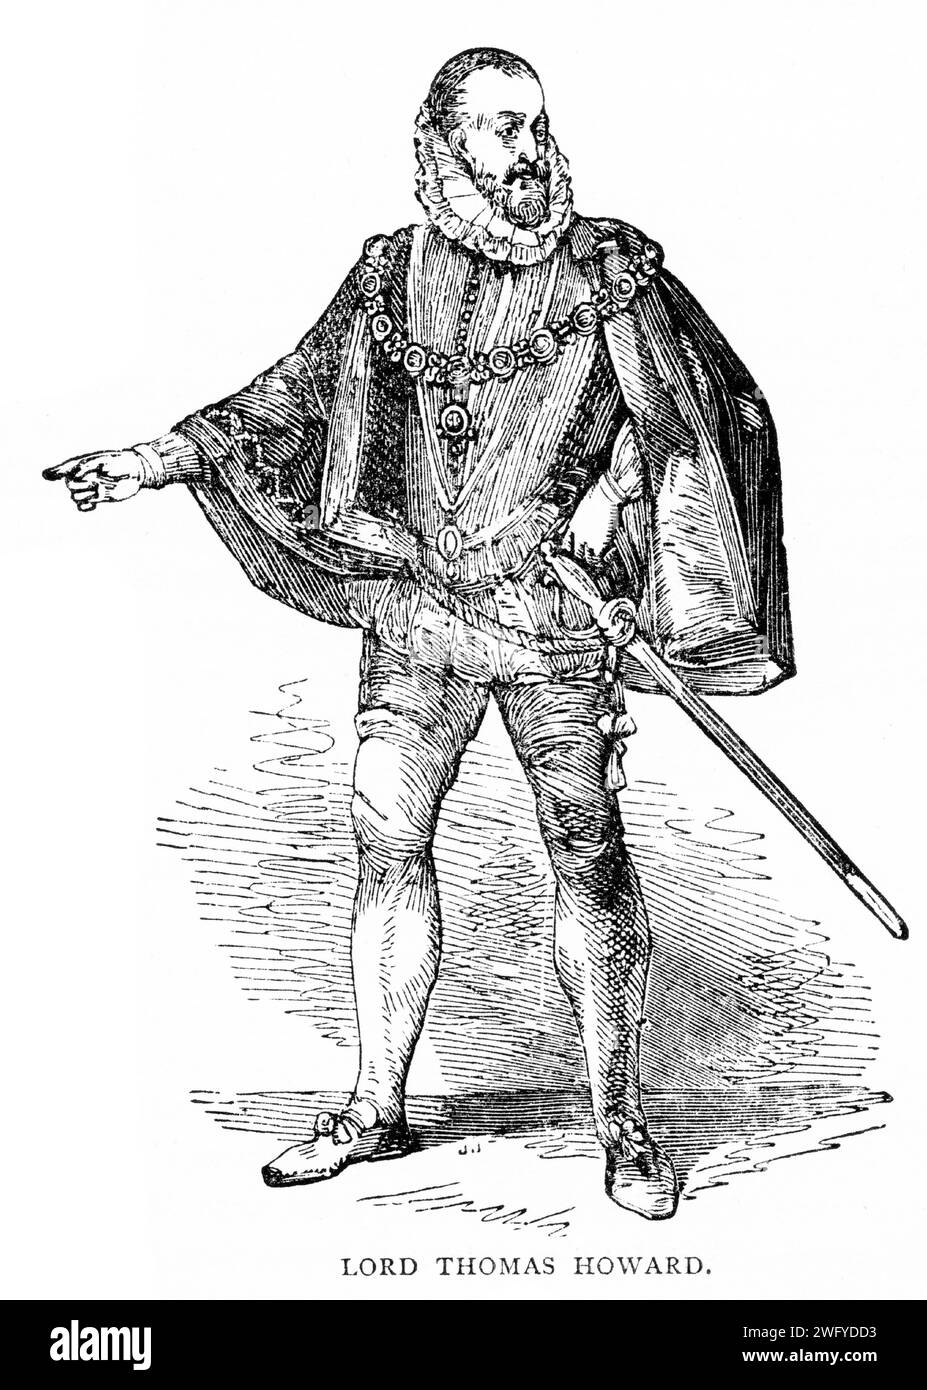 Porträt von Thomas Howard, 4. Duke of Norfolk (1536–1572) englischer Adliger und Politiker. Er war ein zweiter Cousin von Königin Elisabeth I. und bekleidete viele hohe Ämter während des frühen Teils ihrer Herrschaft. Veröffentlicht um 1900 Stockfoto